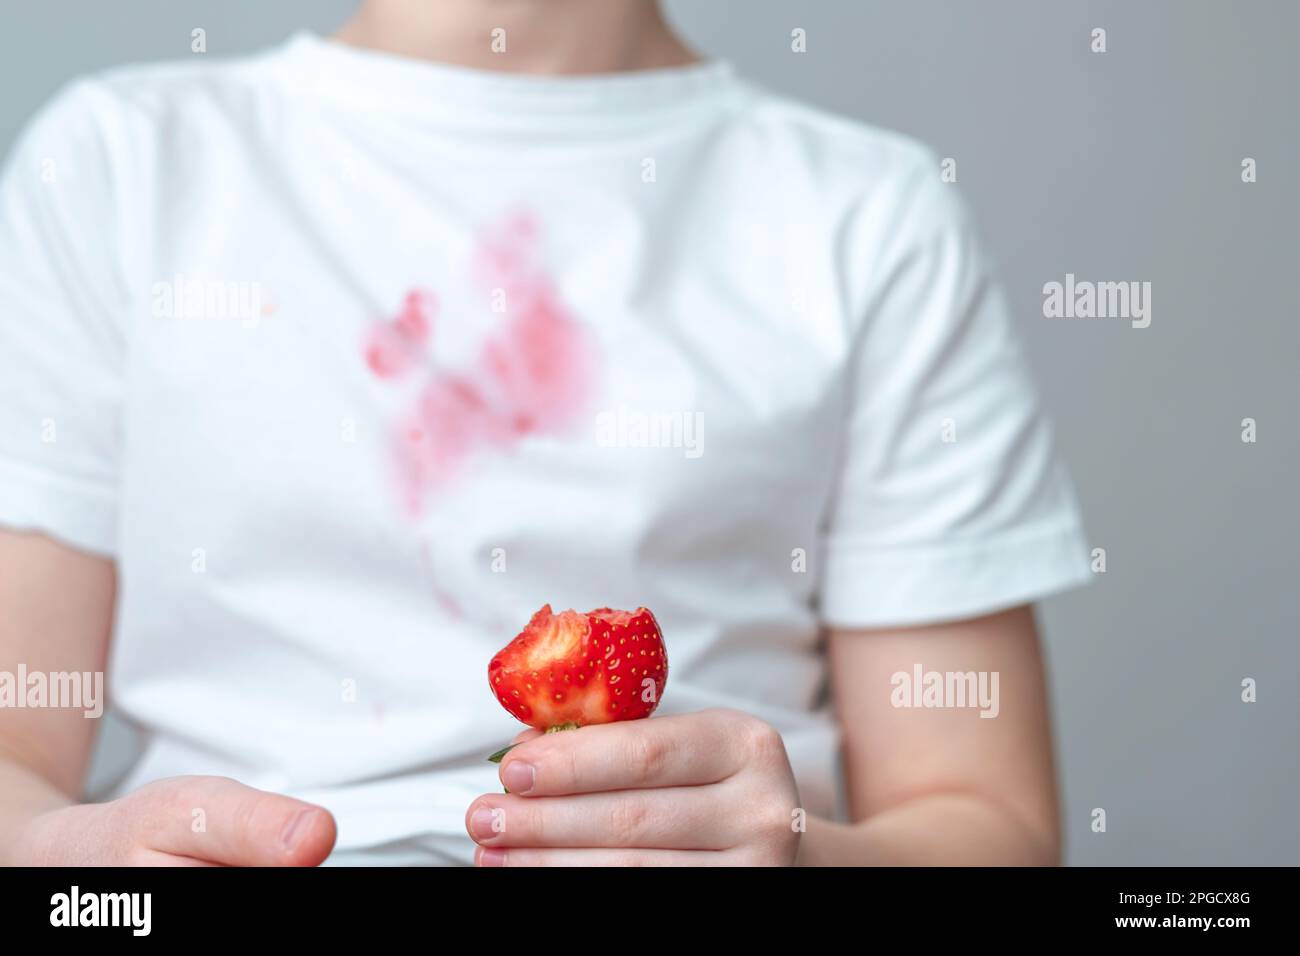 Ein schmutziger roter Fleck auf der Vorderseite eines weißen T-Shirts. Die Hand eines Kindes hält ein Stück Erdbeere in der Hand. Stockfoto